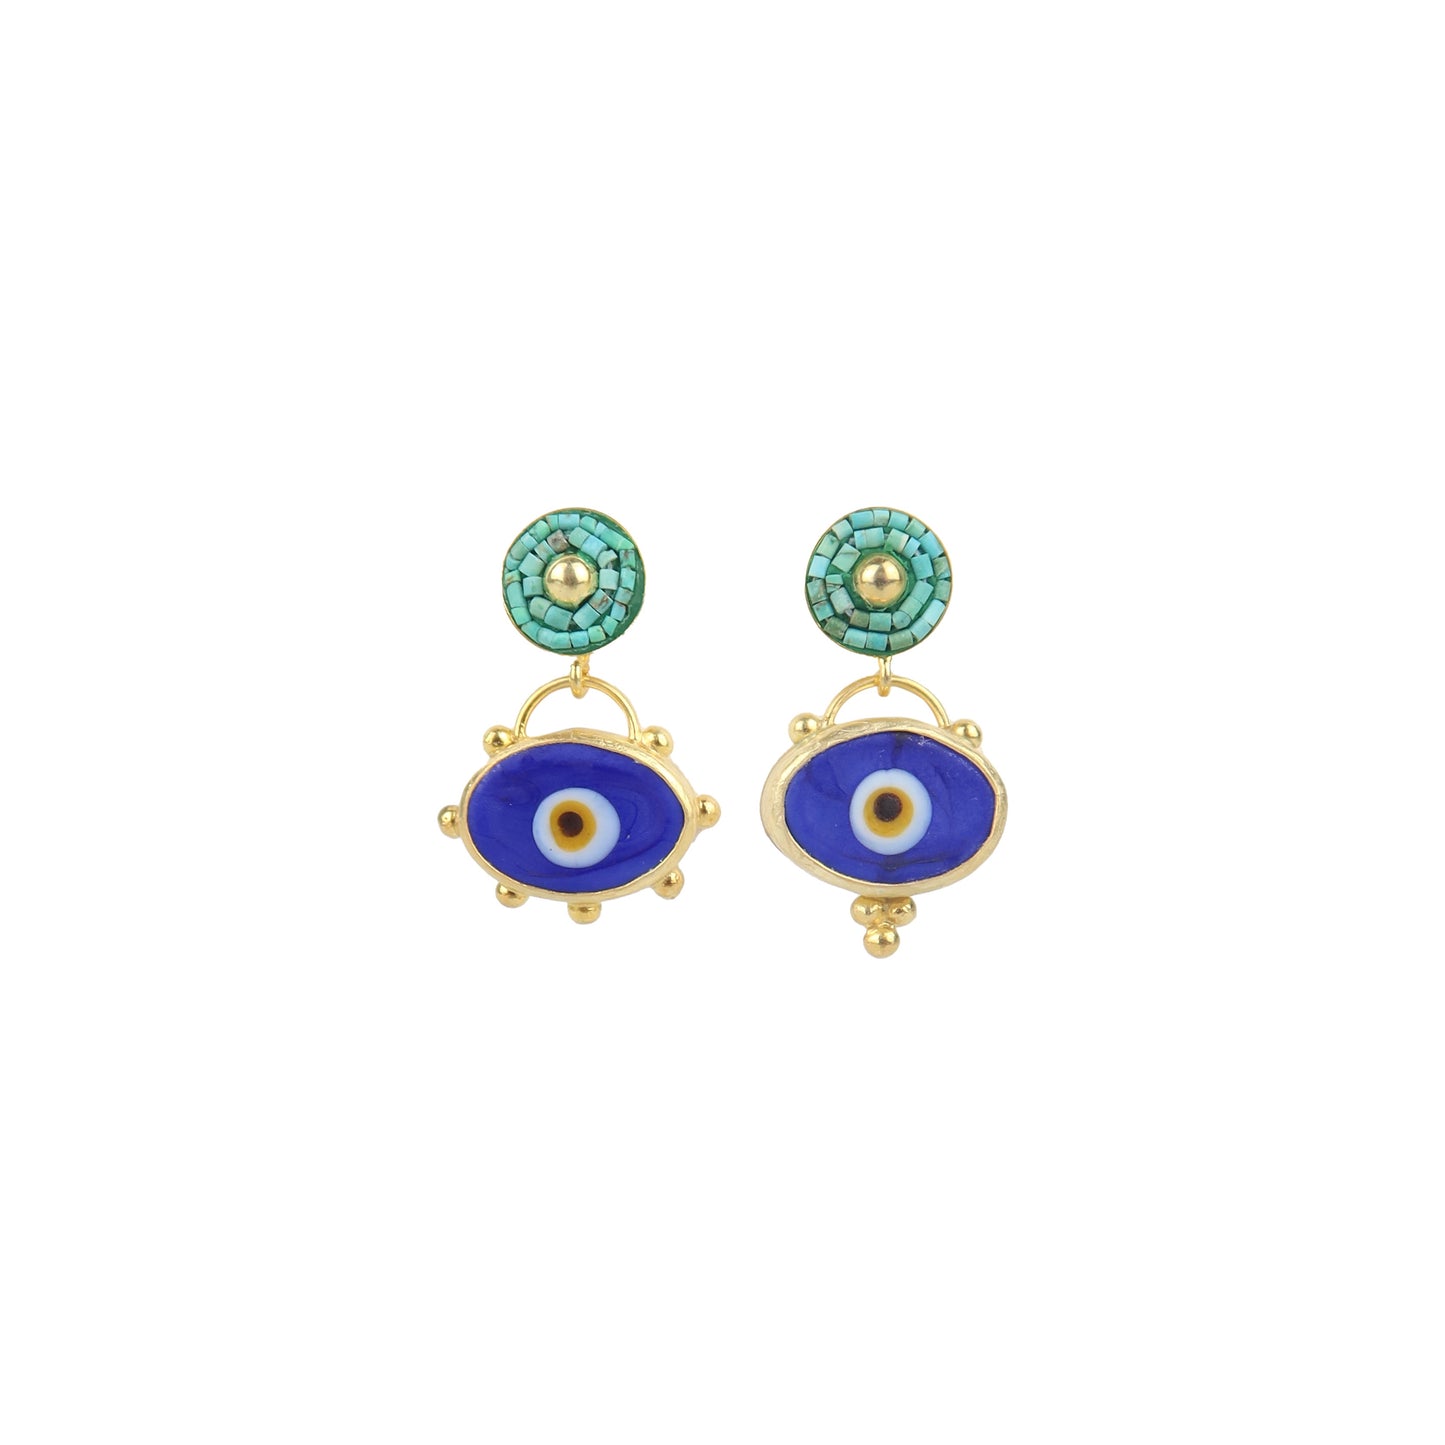 Turquoise + Glass Eye Earrings